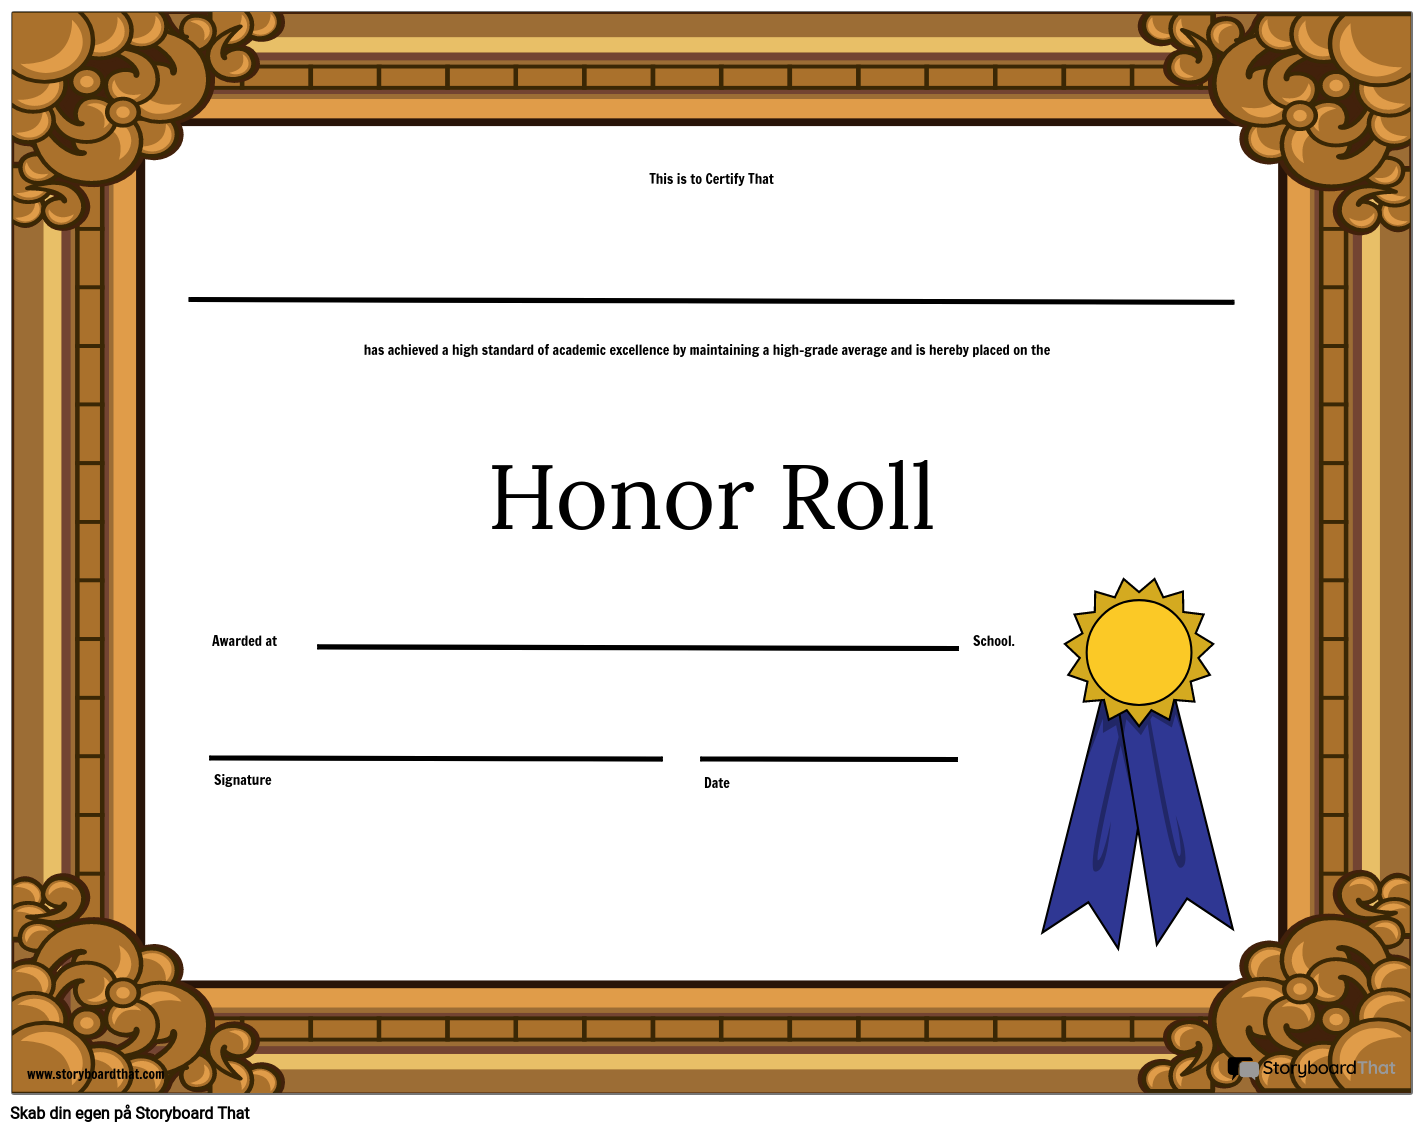 honor-roll-regnearkskabelon-storyboard-af-da-examples